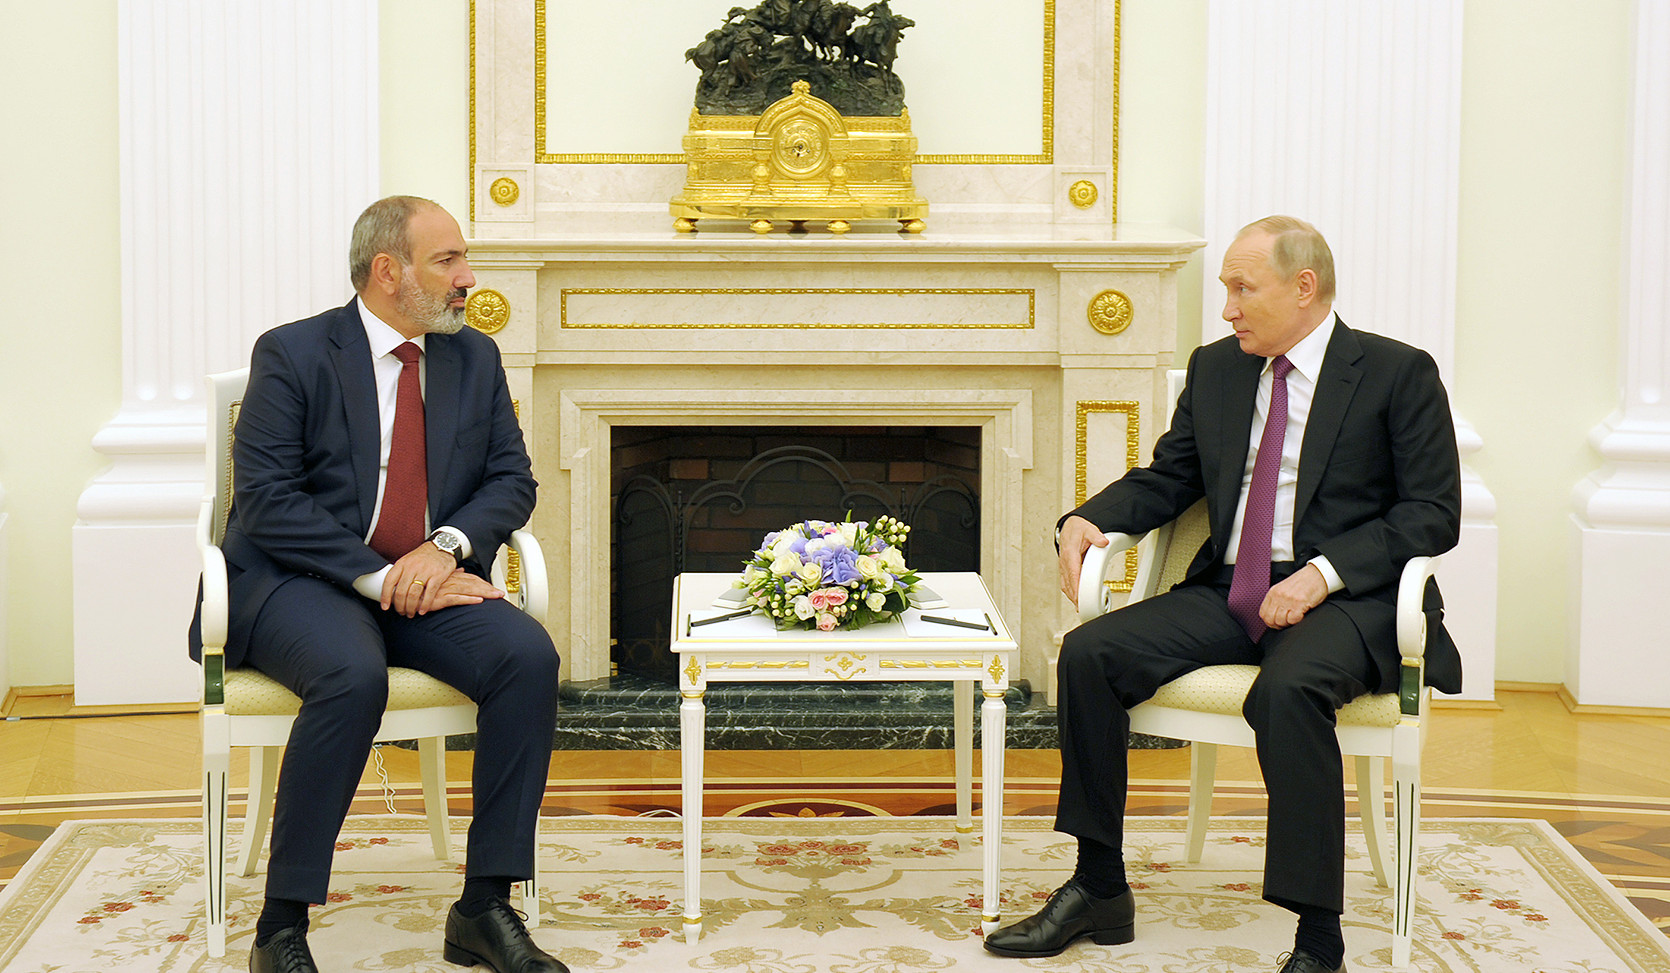 Վարչապետ Նիկոլ Փաշինյանը հեռախոսազրույց է ունեցել Ռուսաստանի Դաշնության նախագահ Վլադիմիր Պուտինի հետ